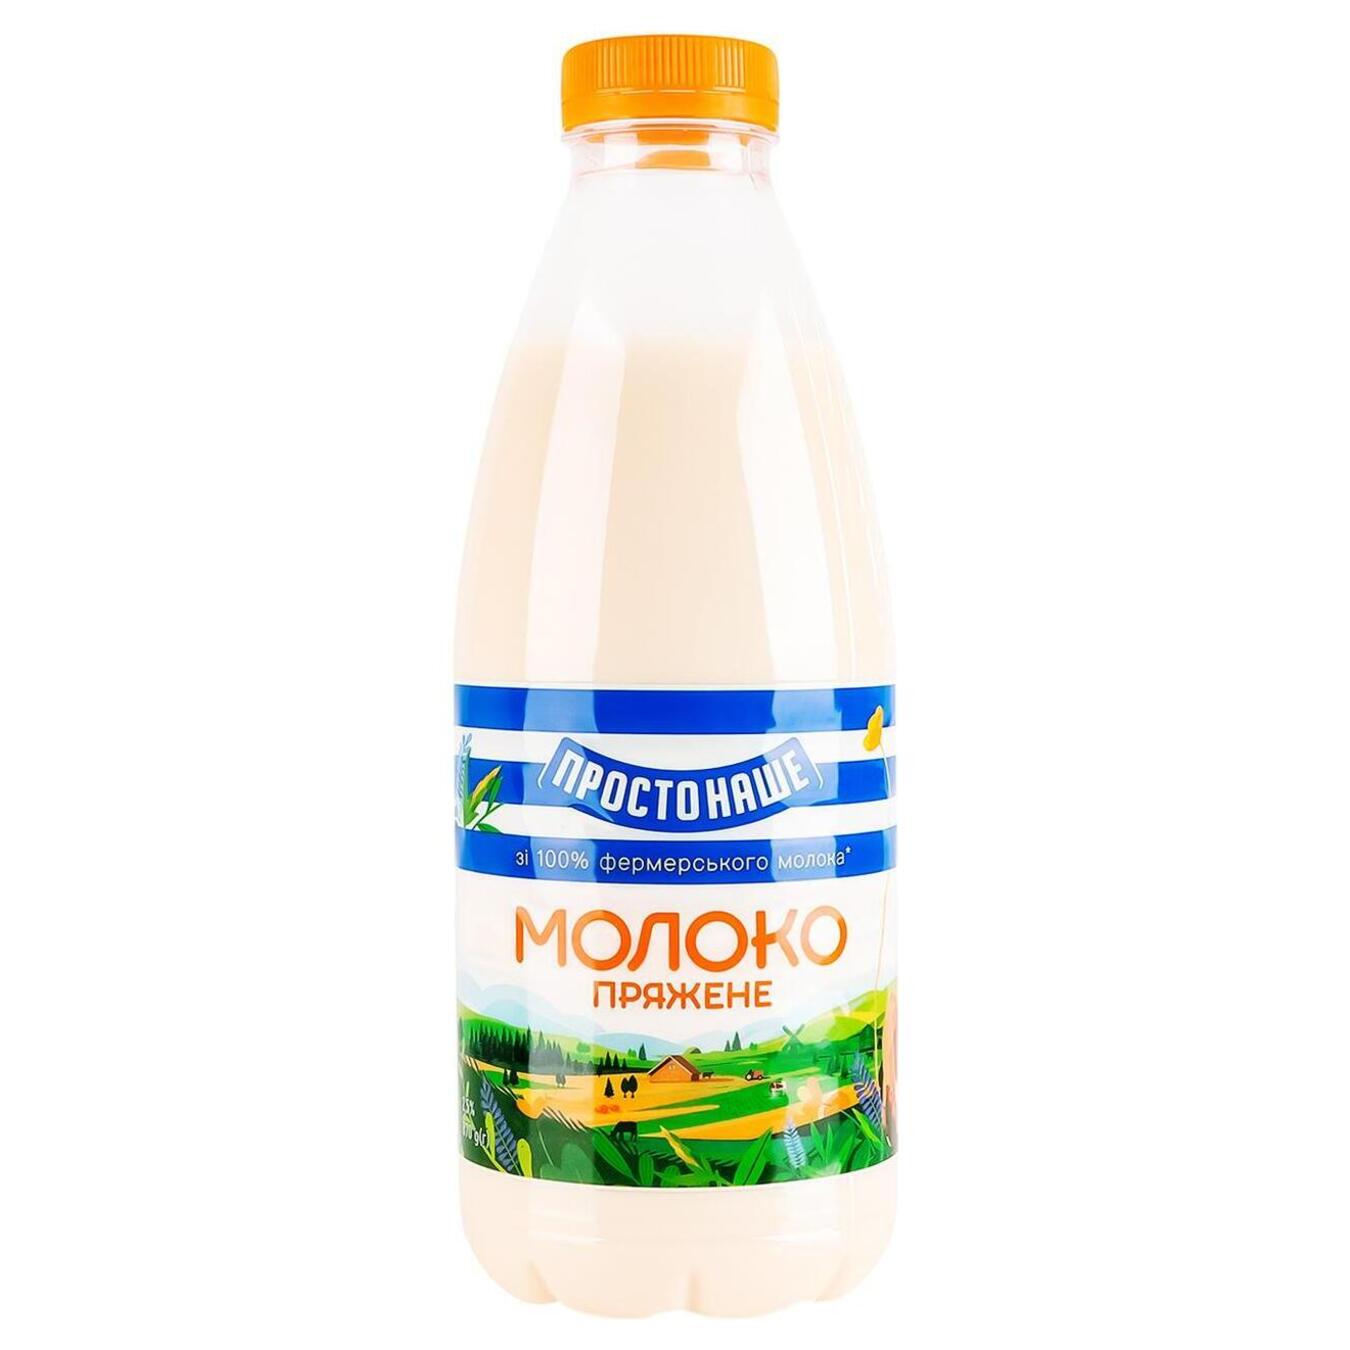 Молоко топленое Простонаше 2,5% пет 870